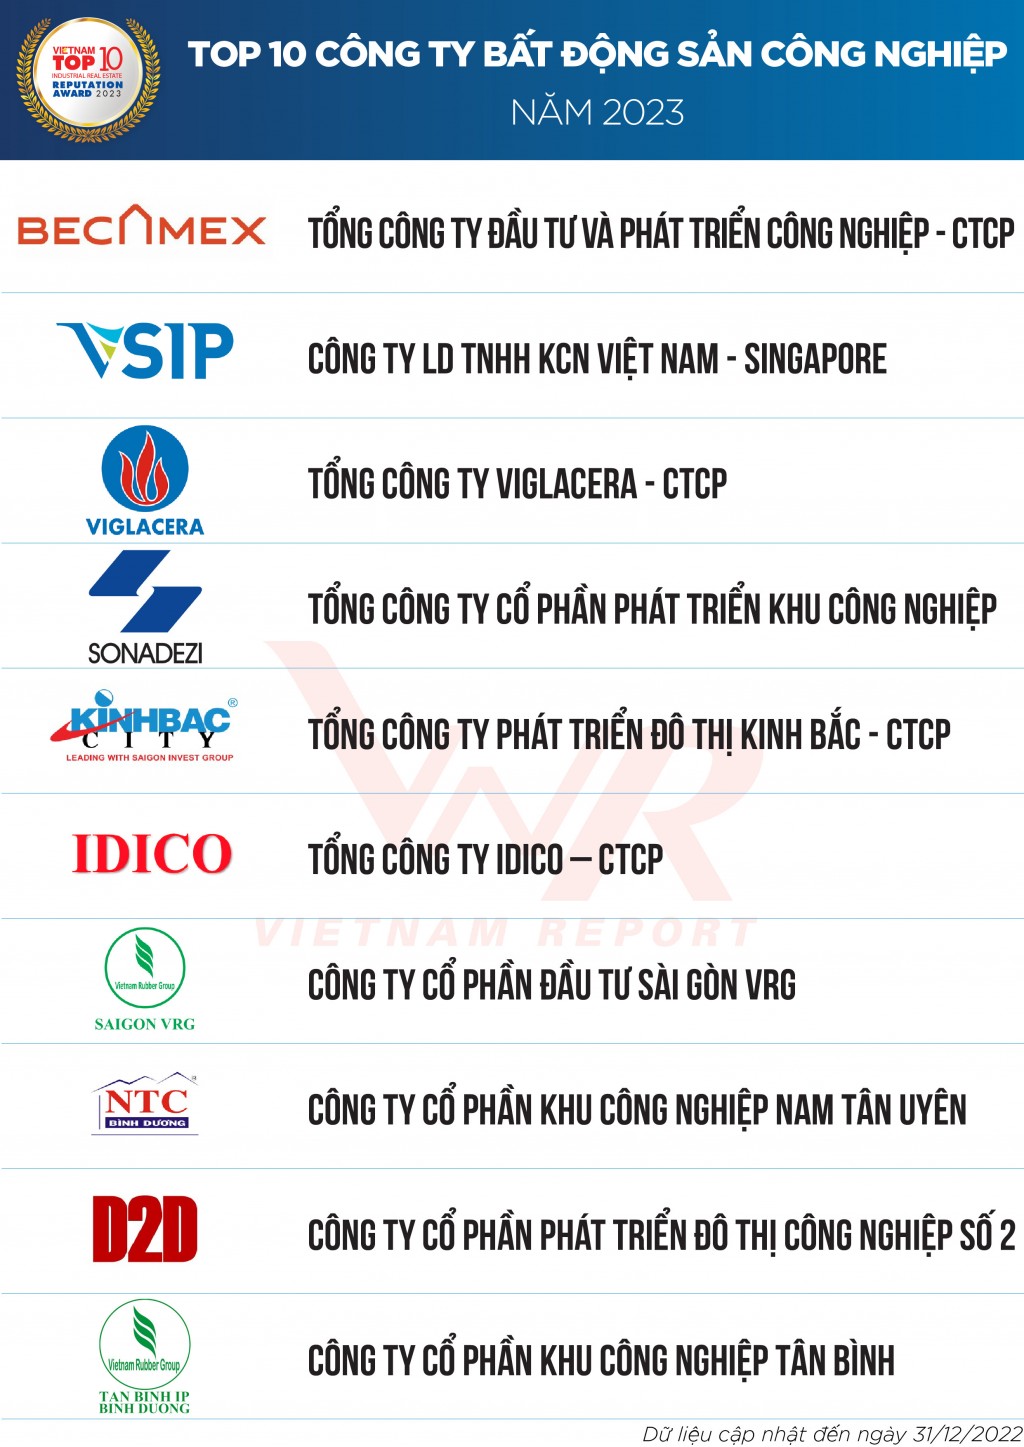 Becamex IDC lọt top công ty bất động sản công nghiệp uy tín nhất tại Việt Nam